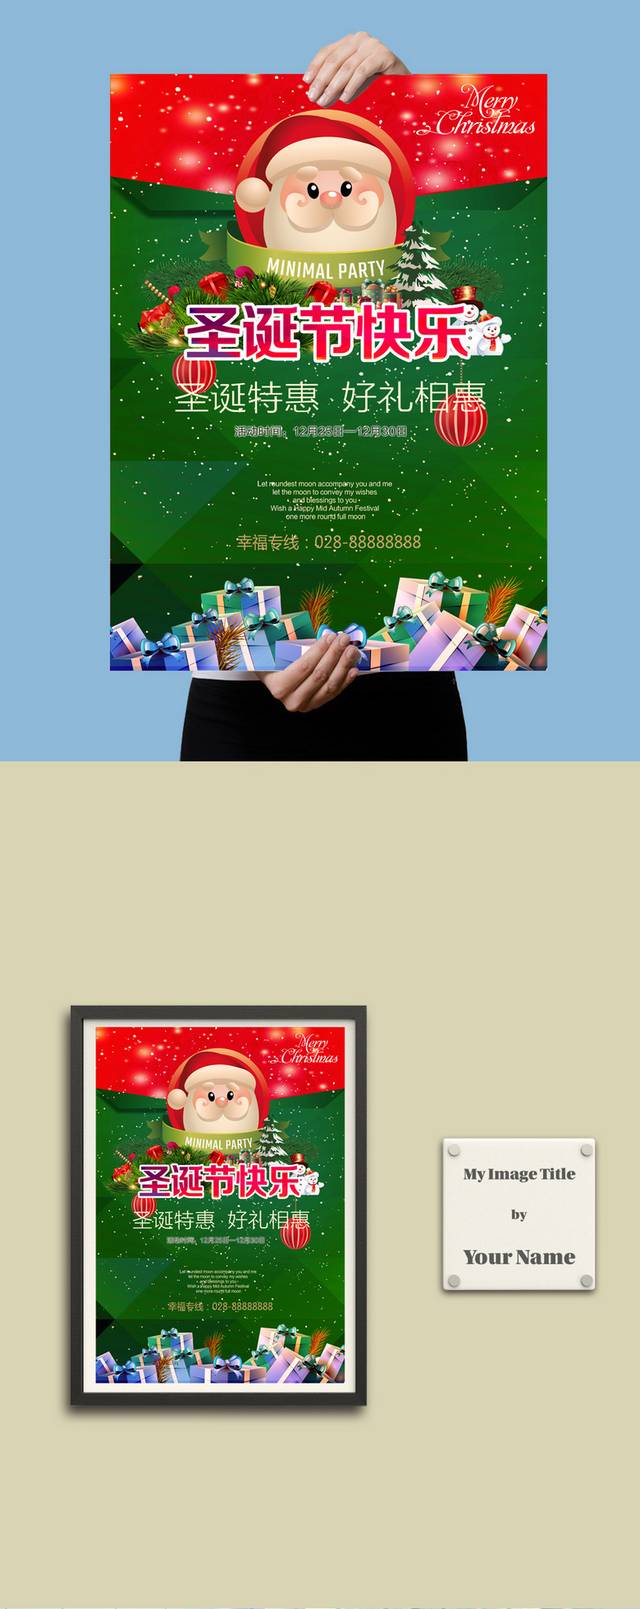 清新时尚圣诞节海报模板下载